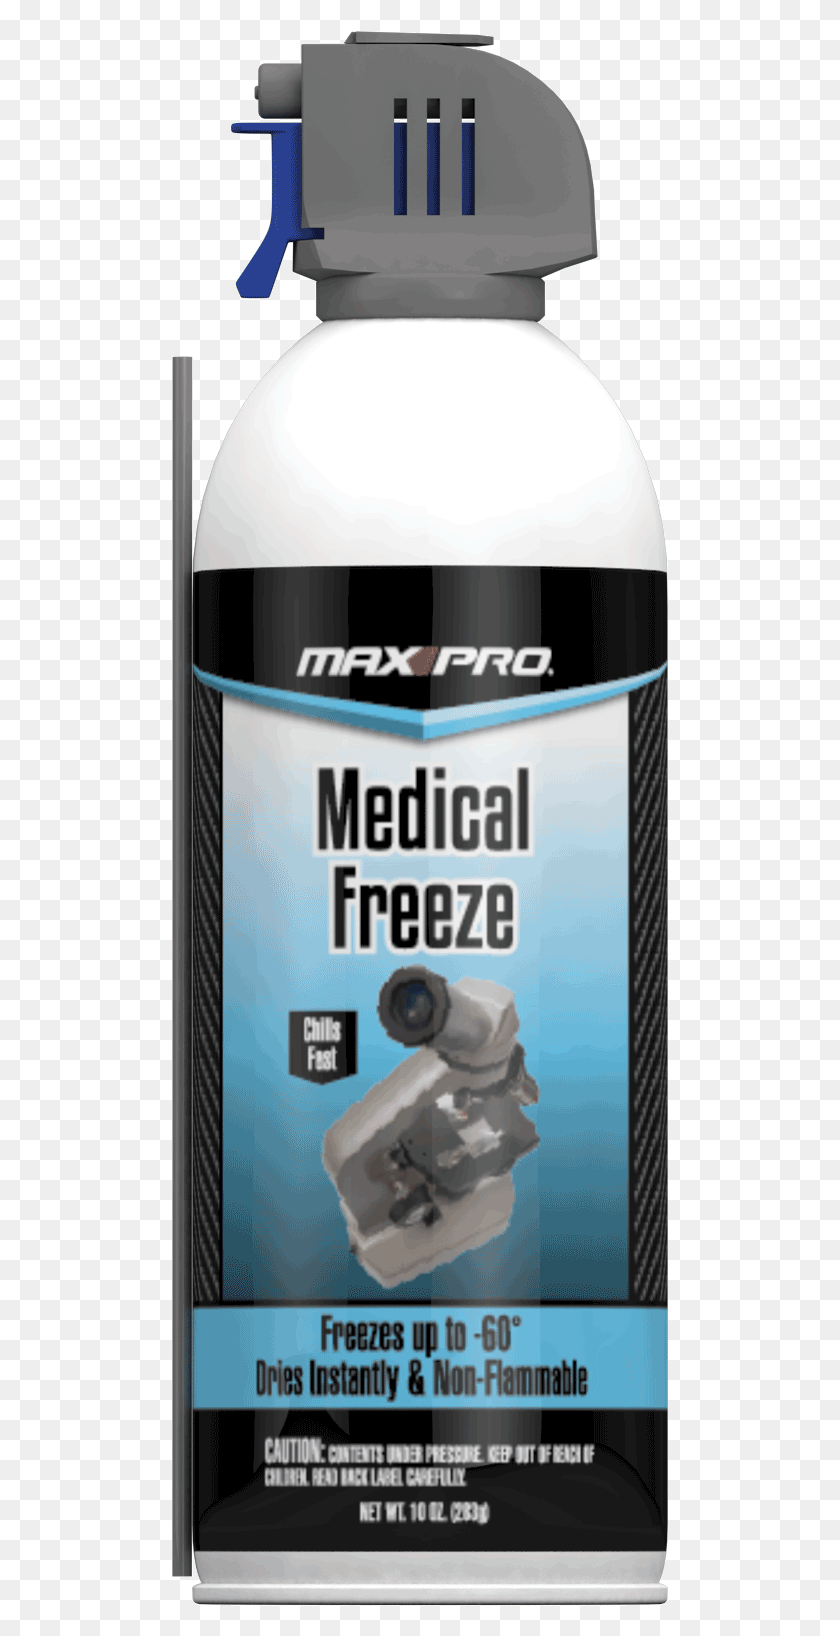 497x1576 Max Pro Medical Freeze Spray Разработан Для Быстрого Медицинского Замораживания Спрея, Жестяная Банка, Этикетка Hd Png Скачать